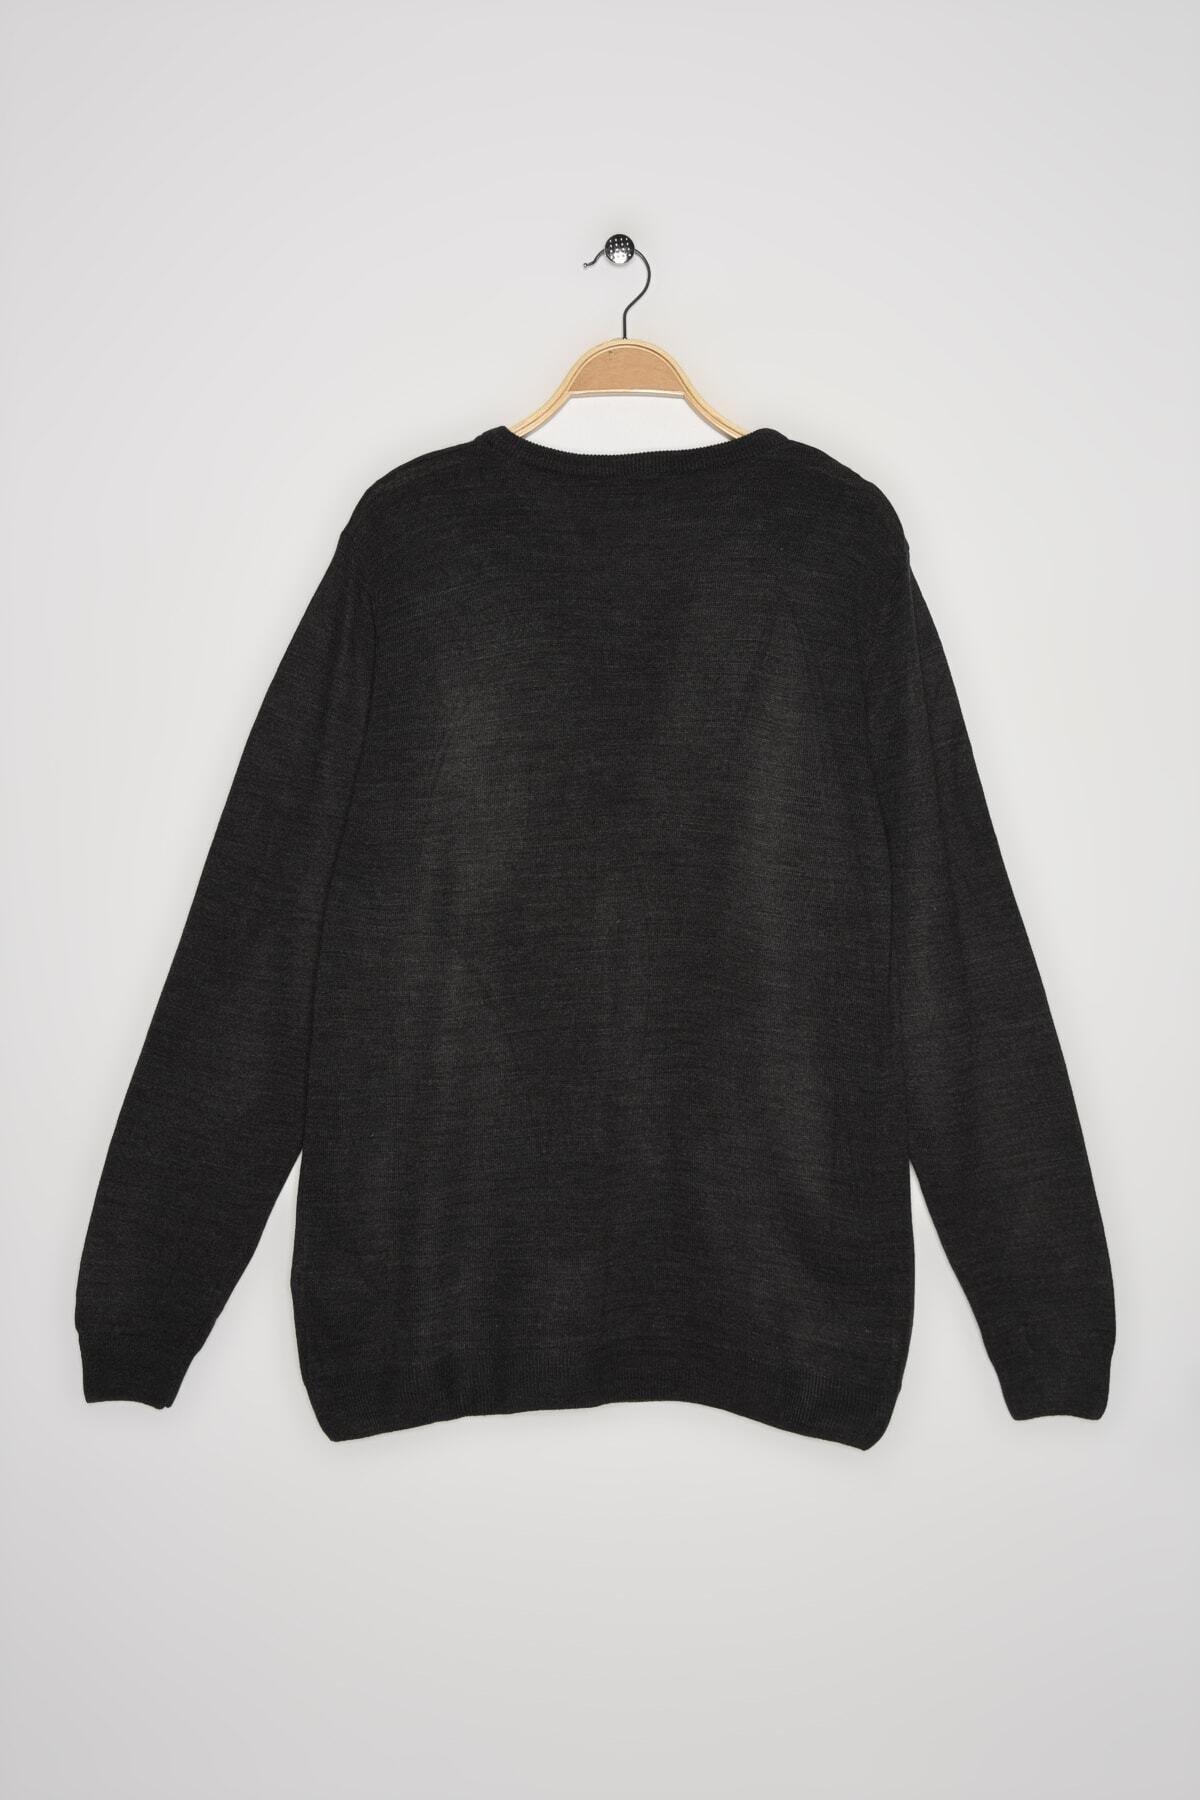 Koton - Black V-Neck Basic Sweater